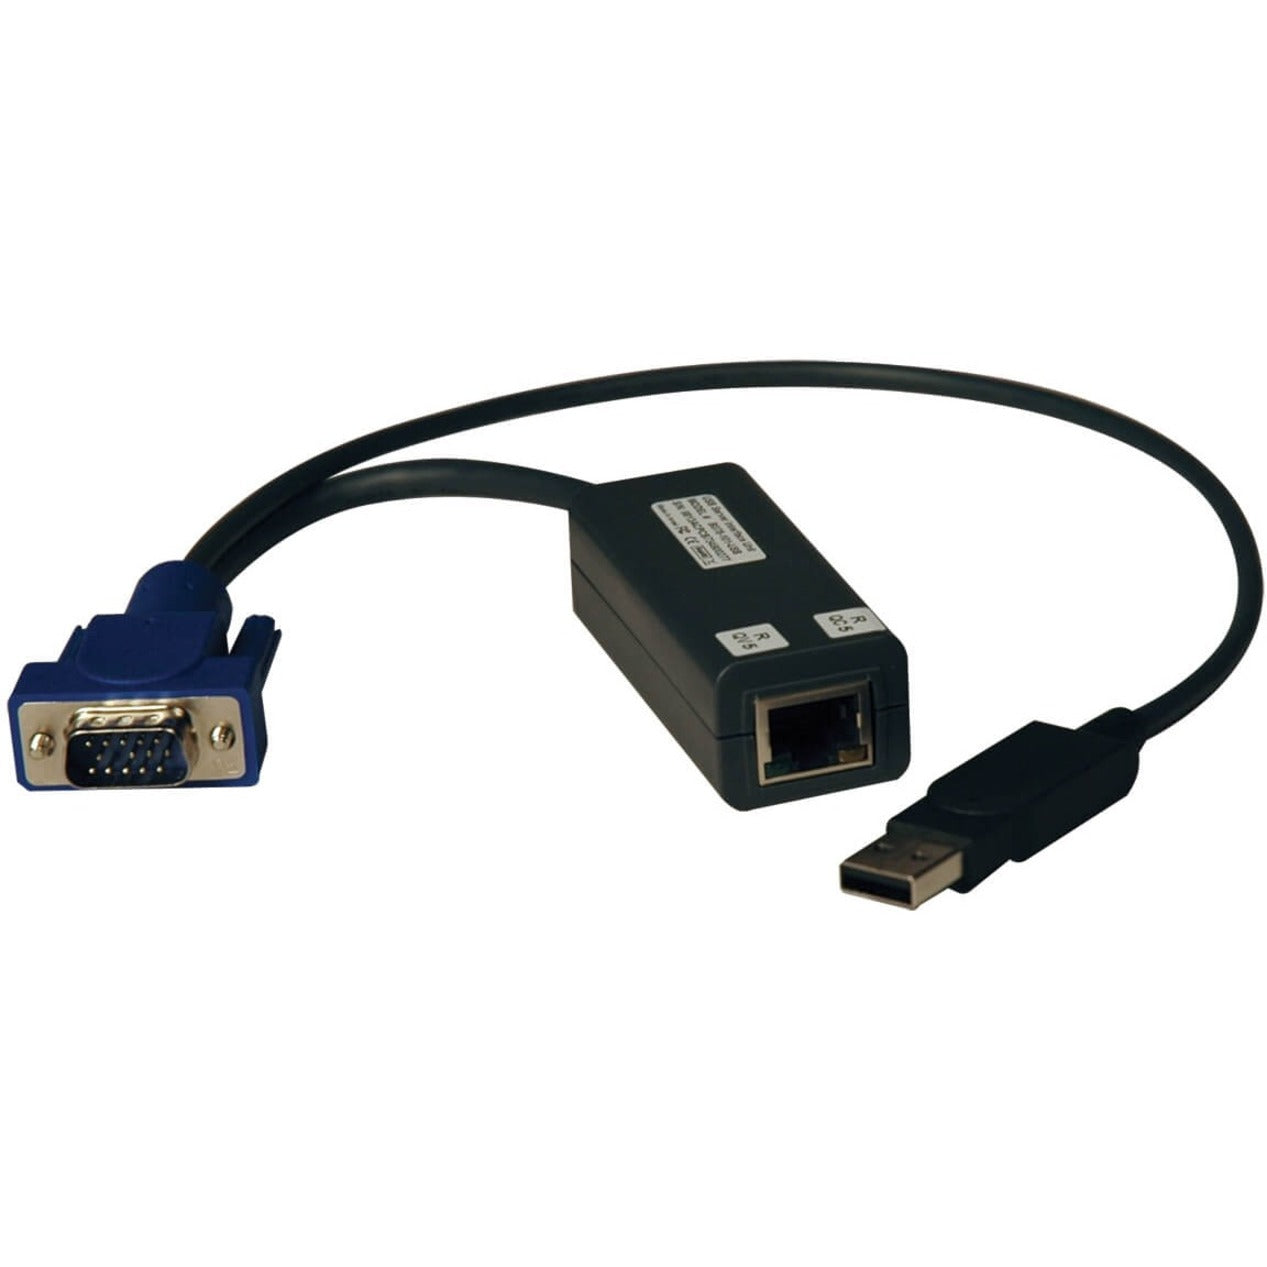 تريب لايت B078-101-USB-1 نتكوماندر كيبل وحدة واجهة الخادم (SIU) KVM ، RJ-45 / USB / VGA ، أسود